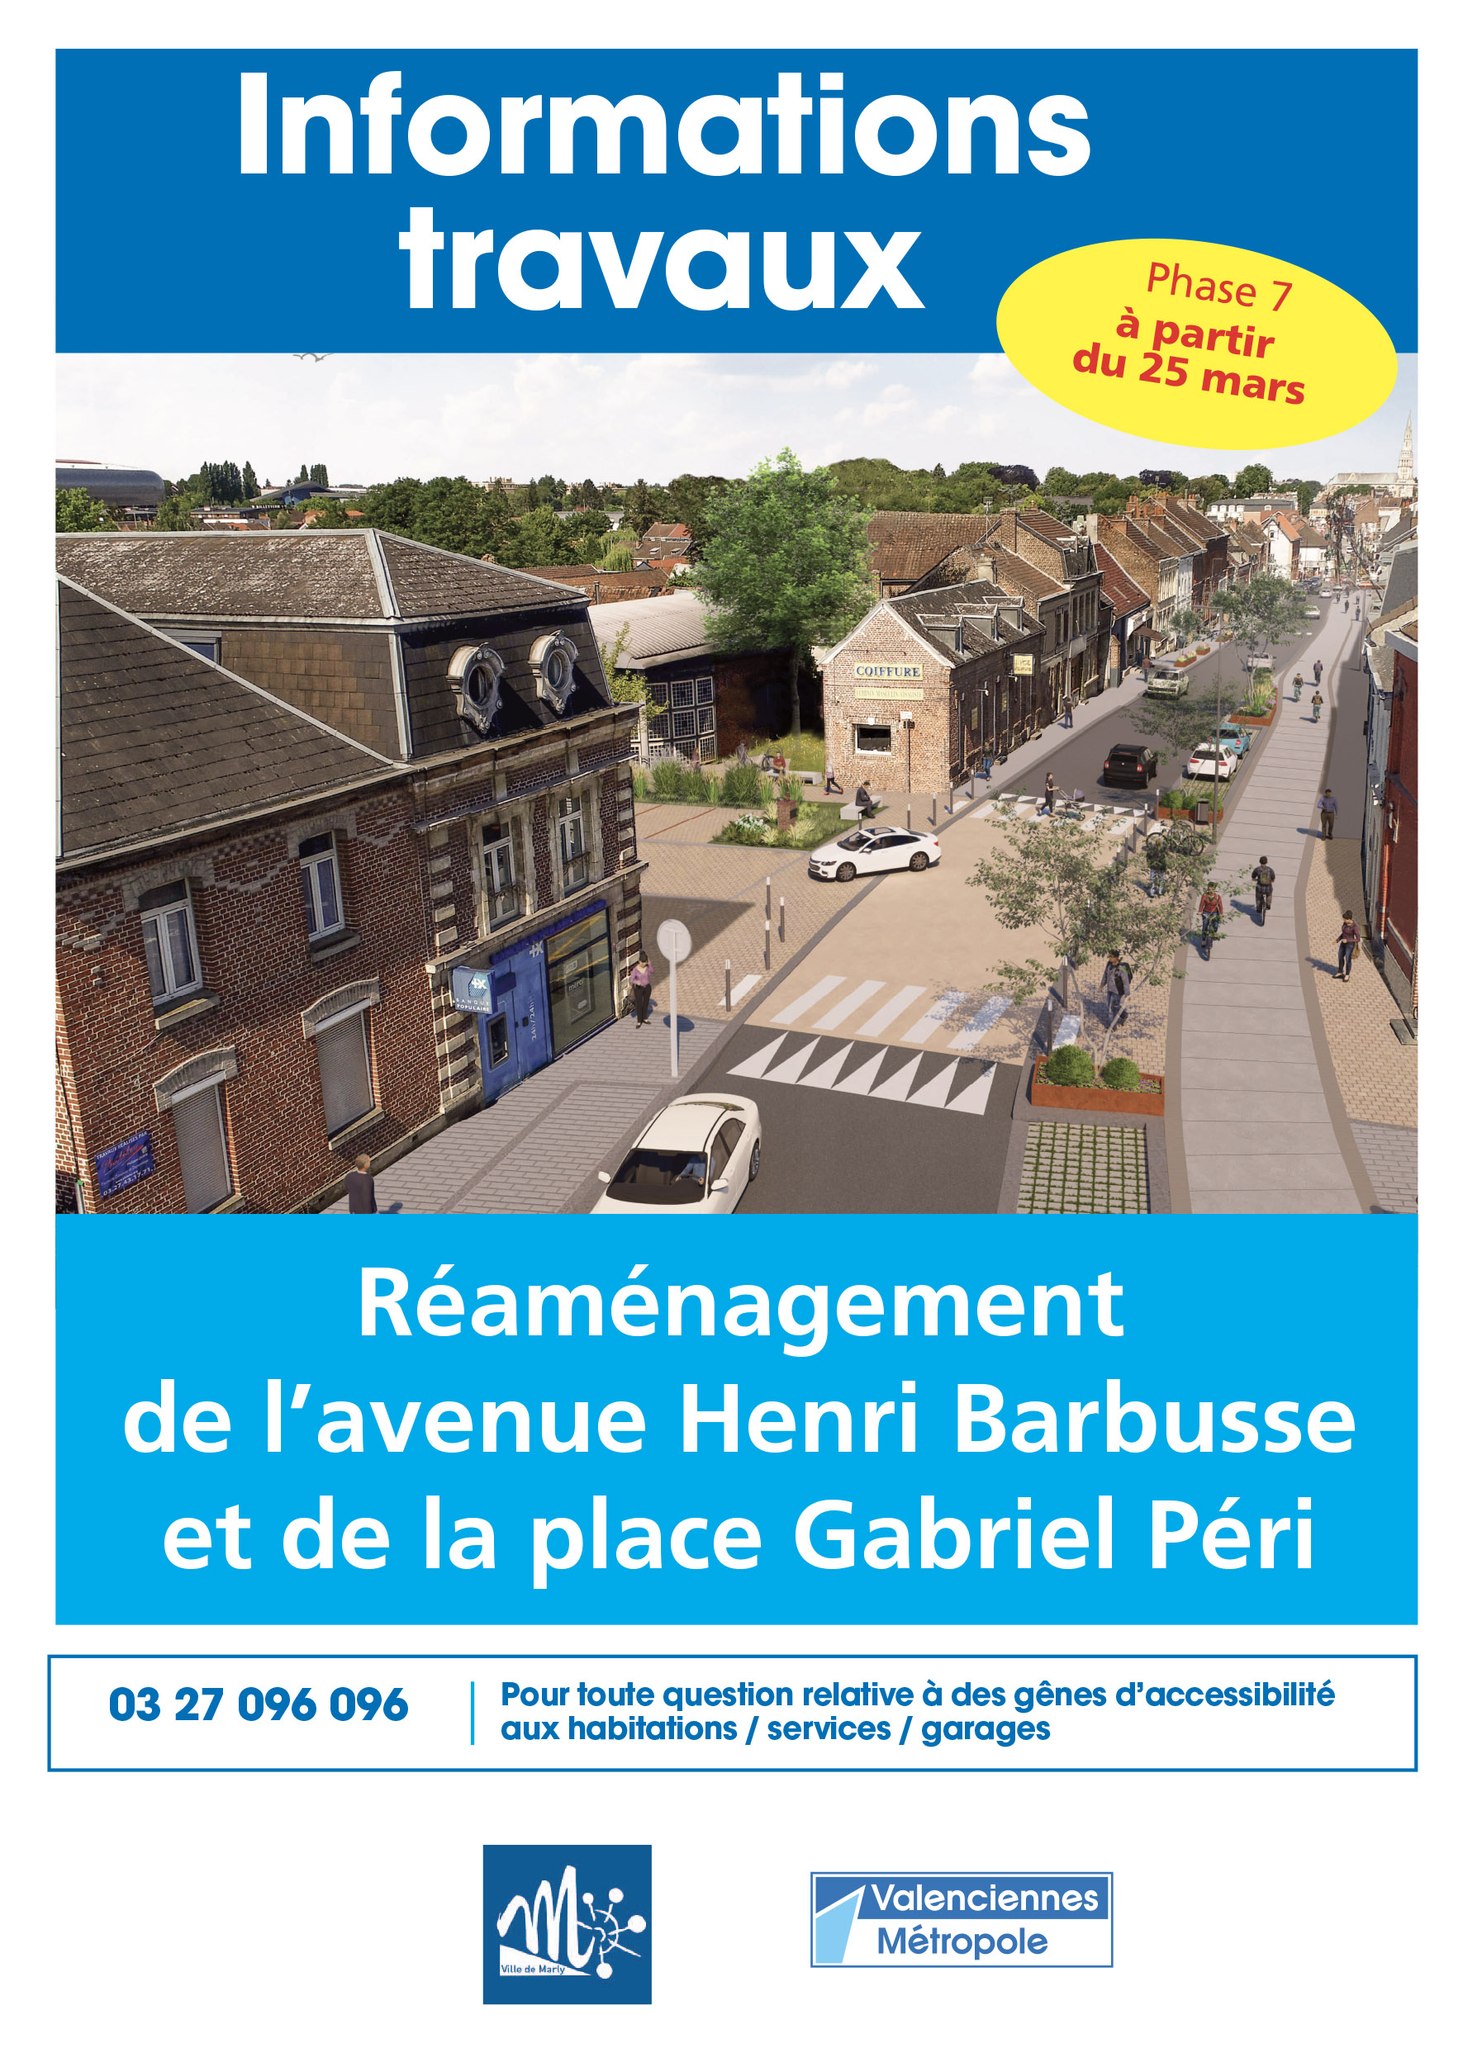 Phase 7 des travaux de réaménagement de l'avenue Henri Barbusse et de la place Gabriel Péri